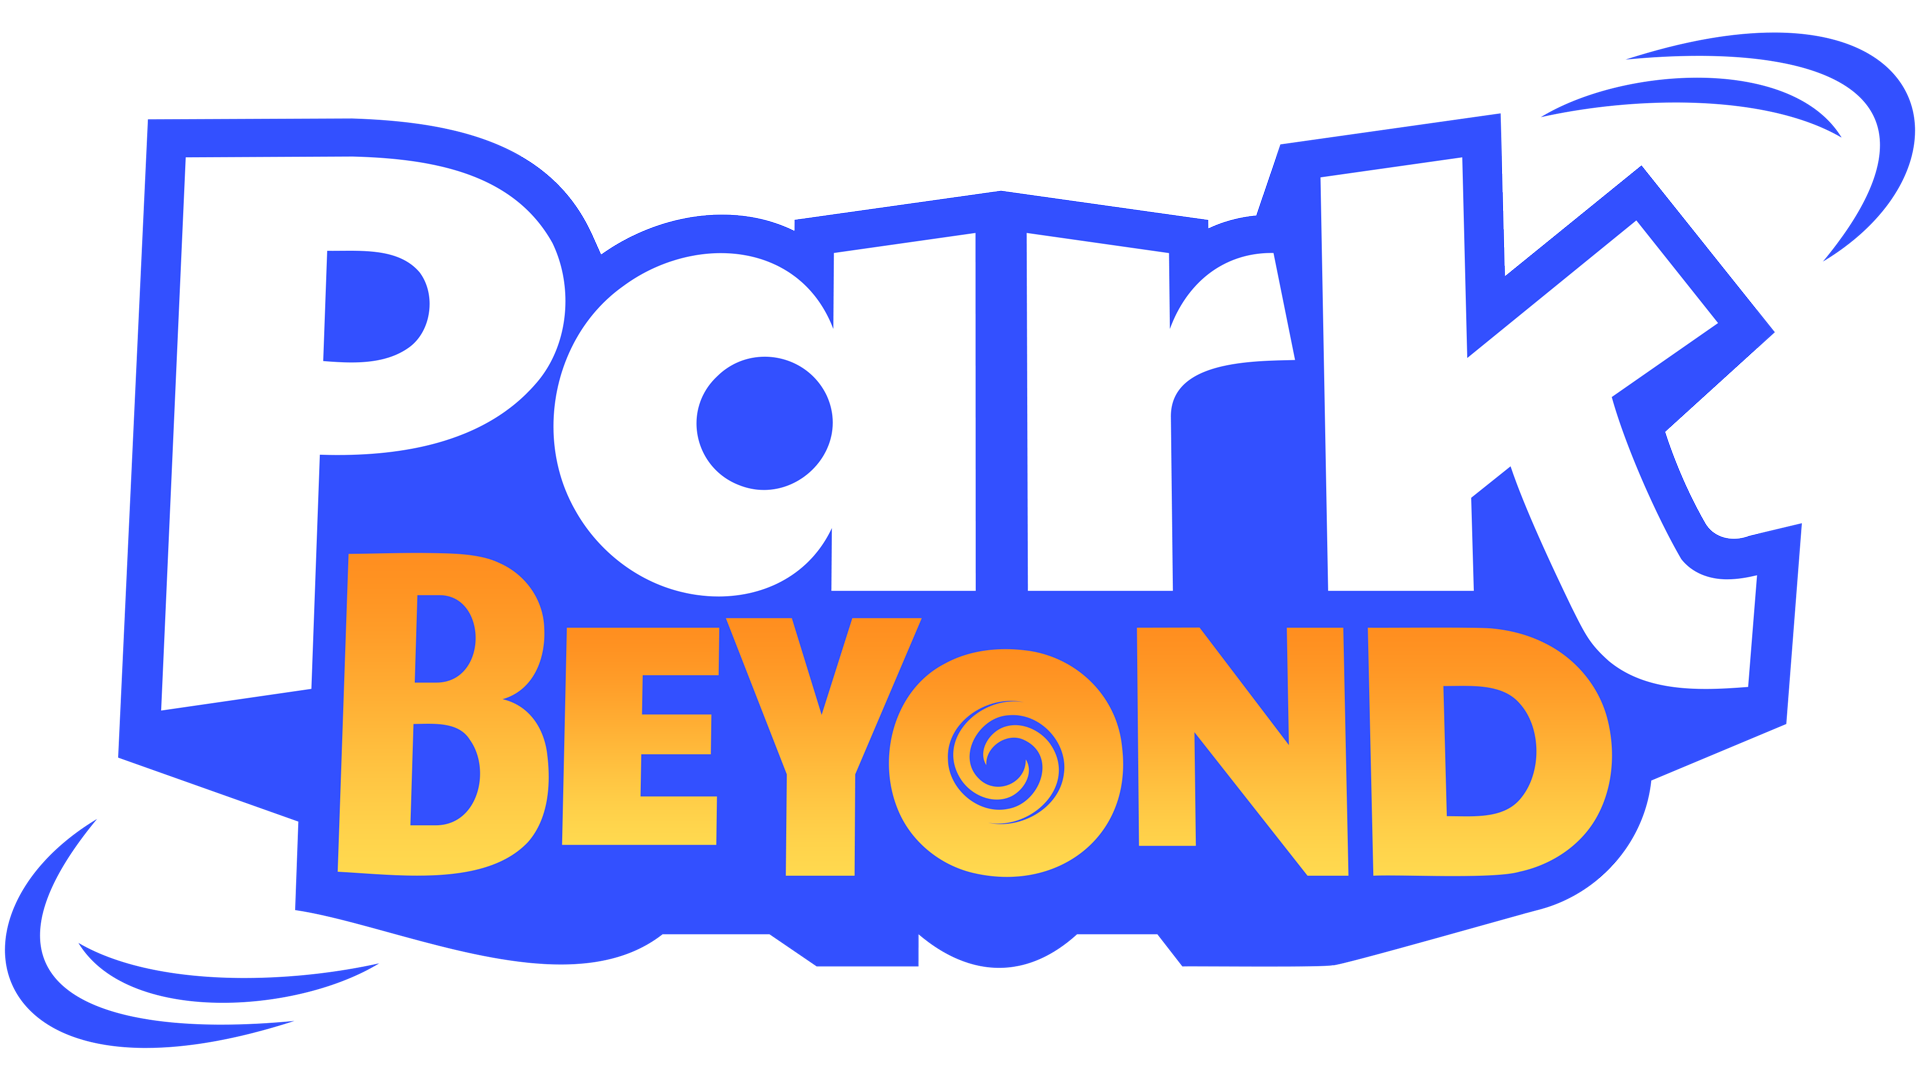 Rencontrez Giles Hemlock, le glacial homme d’affaires du jeu vidéo de gestion de parcs d’attractions : #ParkBeyond !